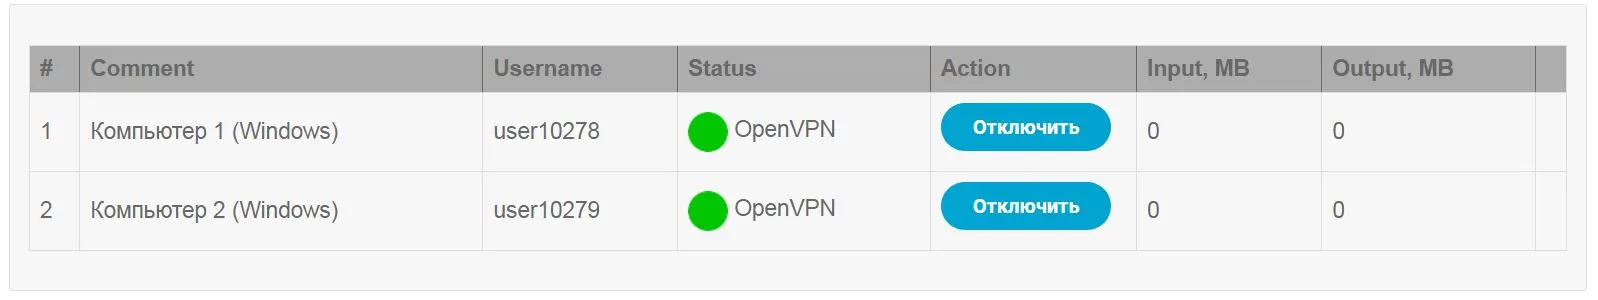 Статус VPN соединений VPNKI туннель